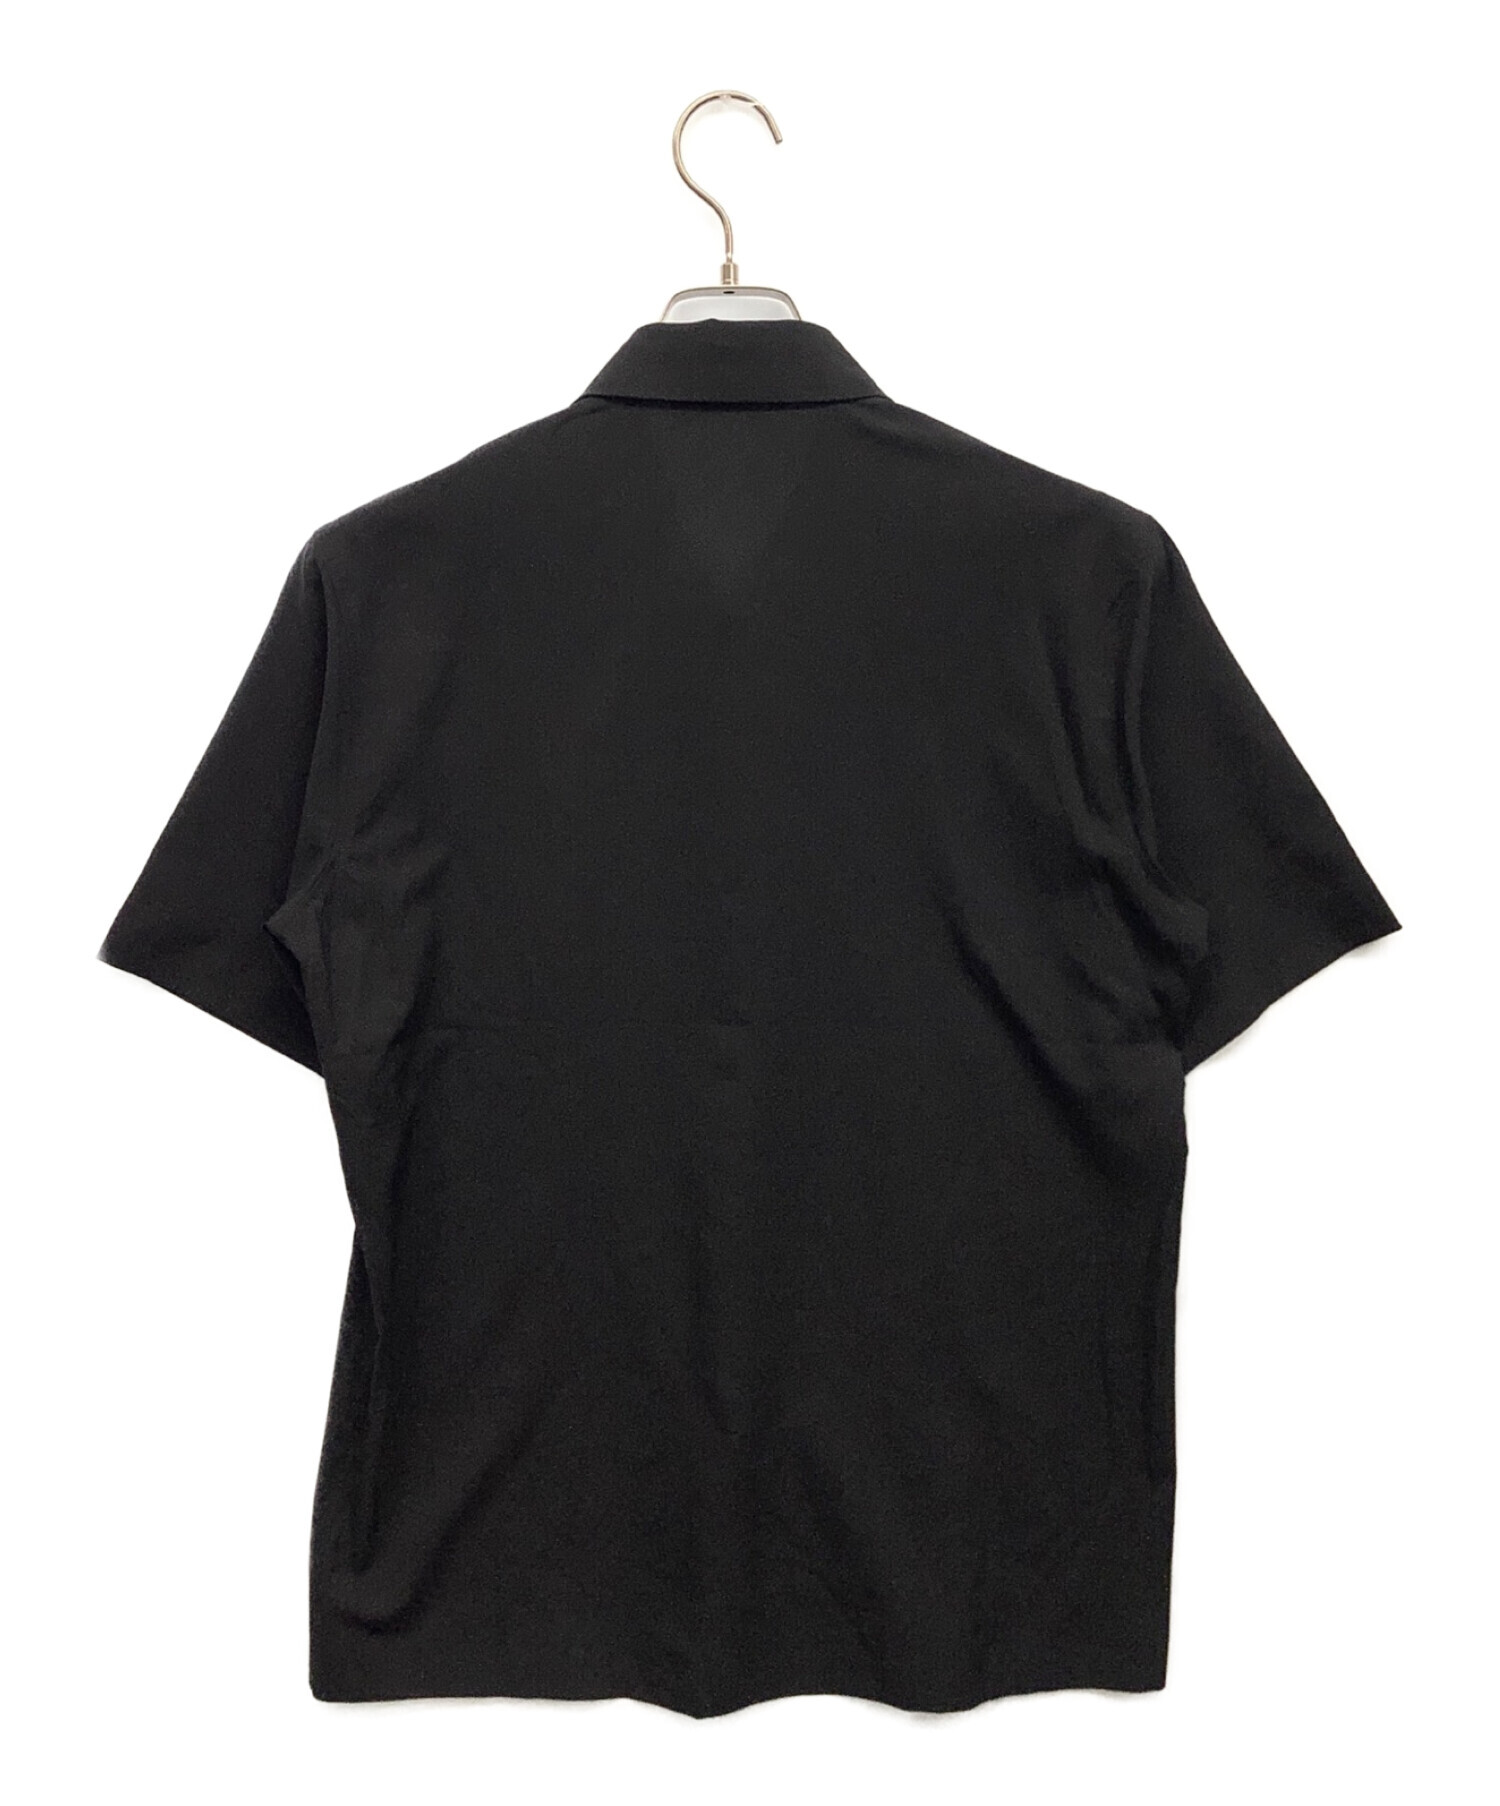 ARC'TERYX (アークテリクス) 半袖シャツ ブラック サイズ:S